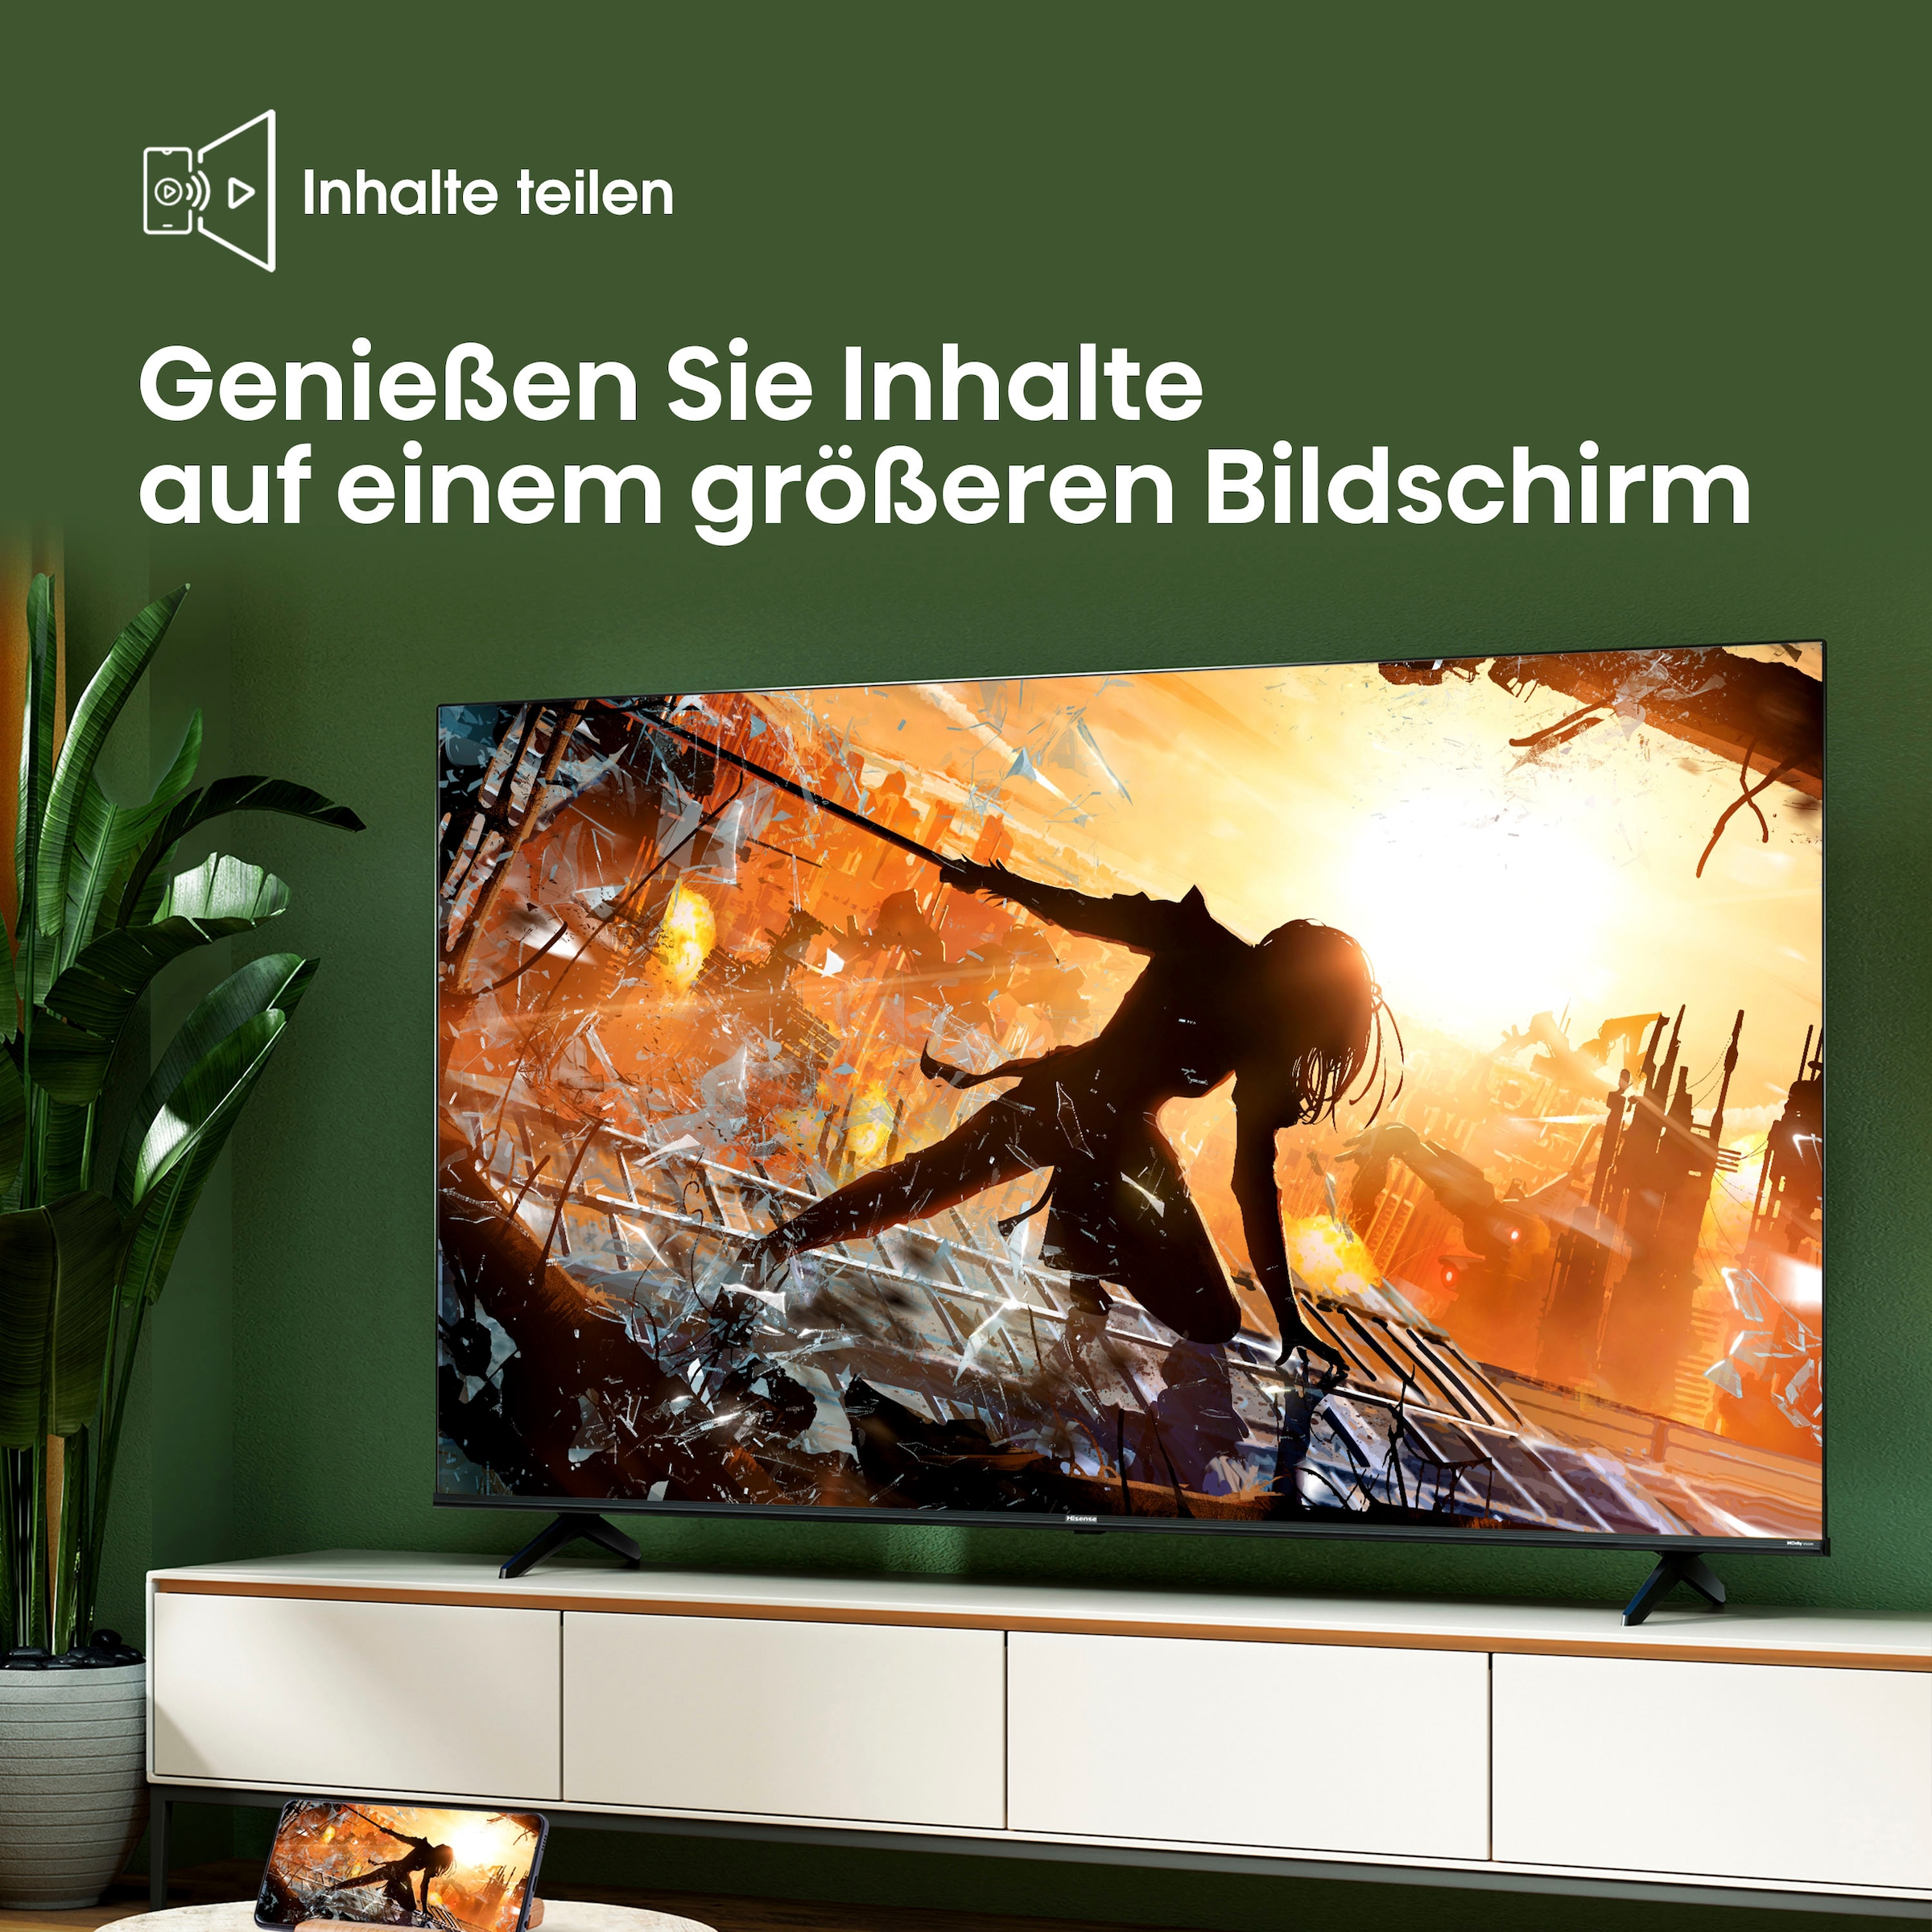 Hisense LED-Fernseher, 127 cm/50 Zoll, 4K Ultra HD, Smart-TV, Smart-TV, Dolby Vision, Triple Tuner DVB-C/S/S2/T/T2